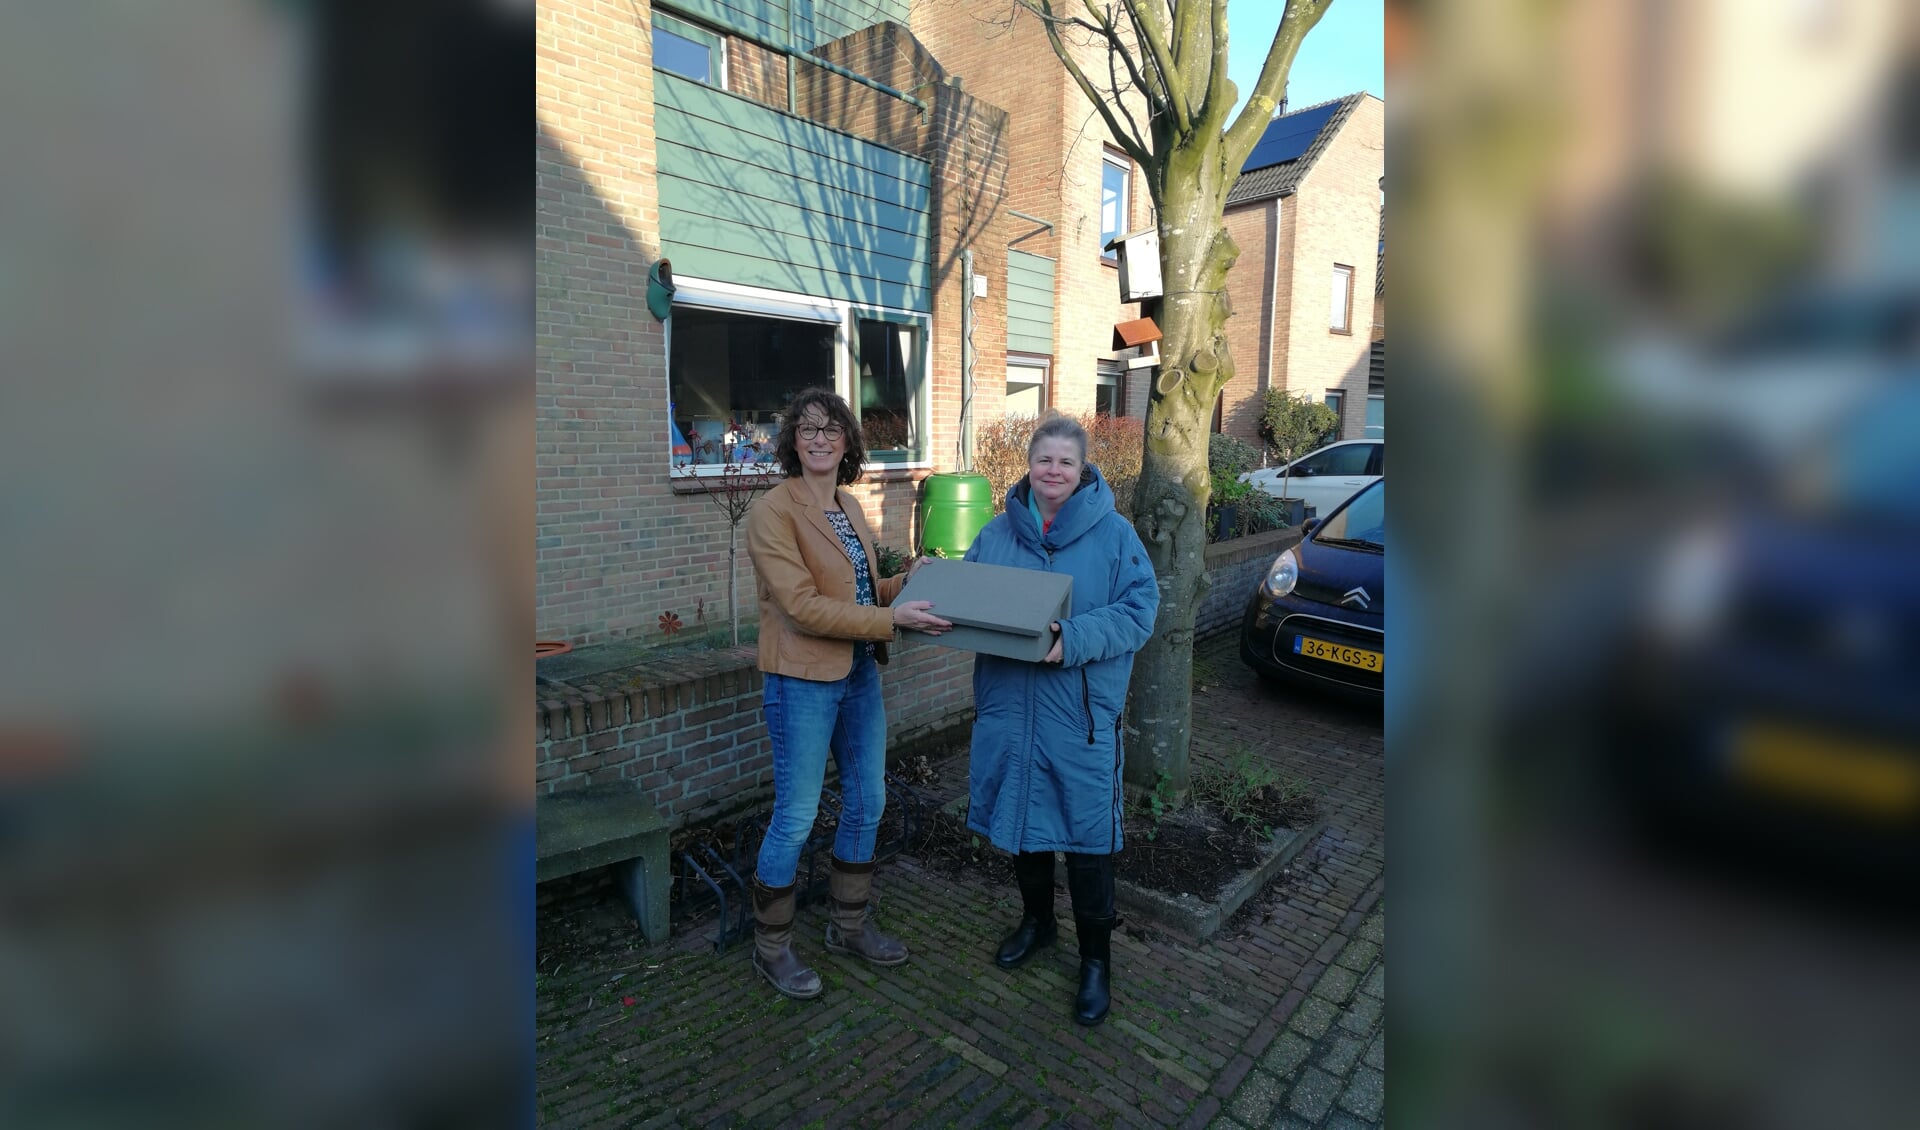 • De eerste gierzwaluwkast wordt overhandigd aan enthousiaste bewoners van de Molenwijk, Lonneke Klein-de Raadt, door Ellen Veth.